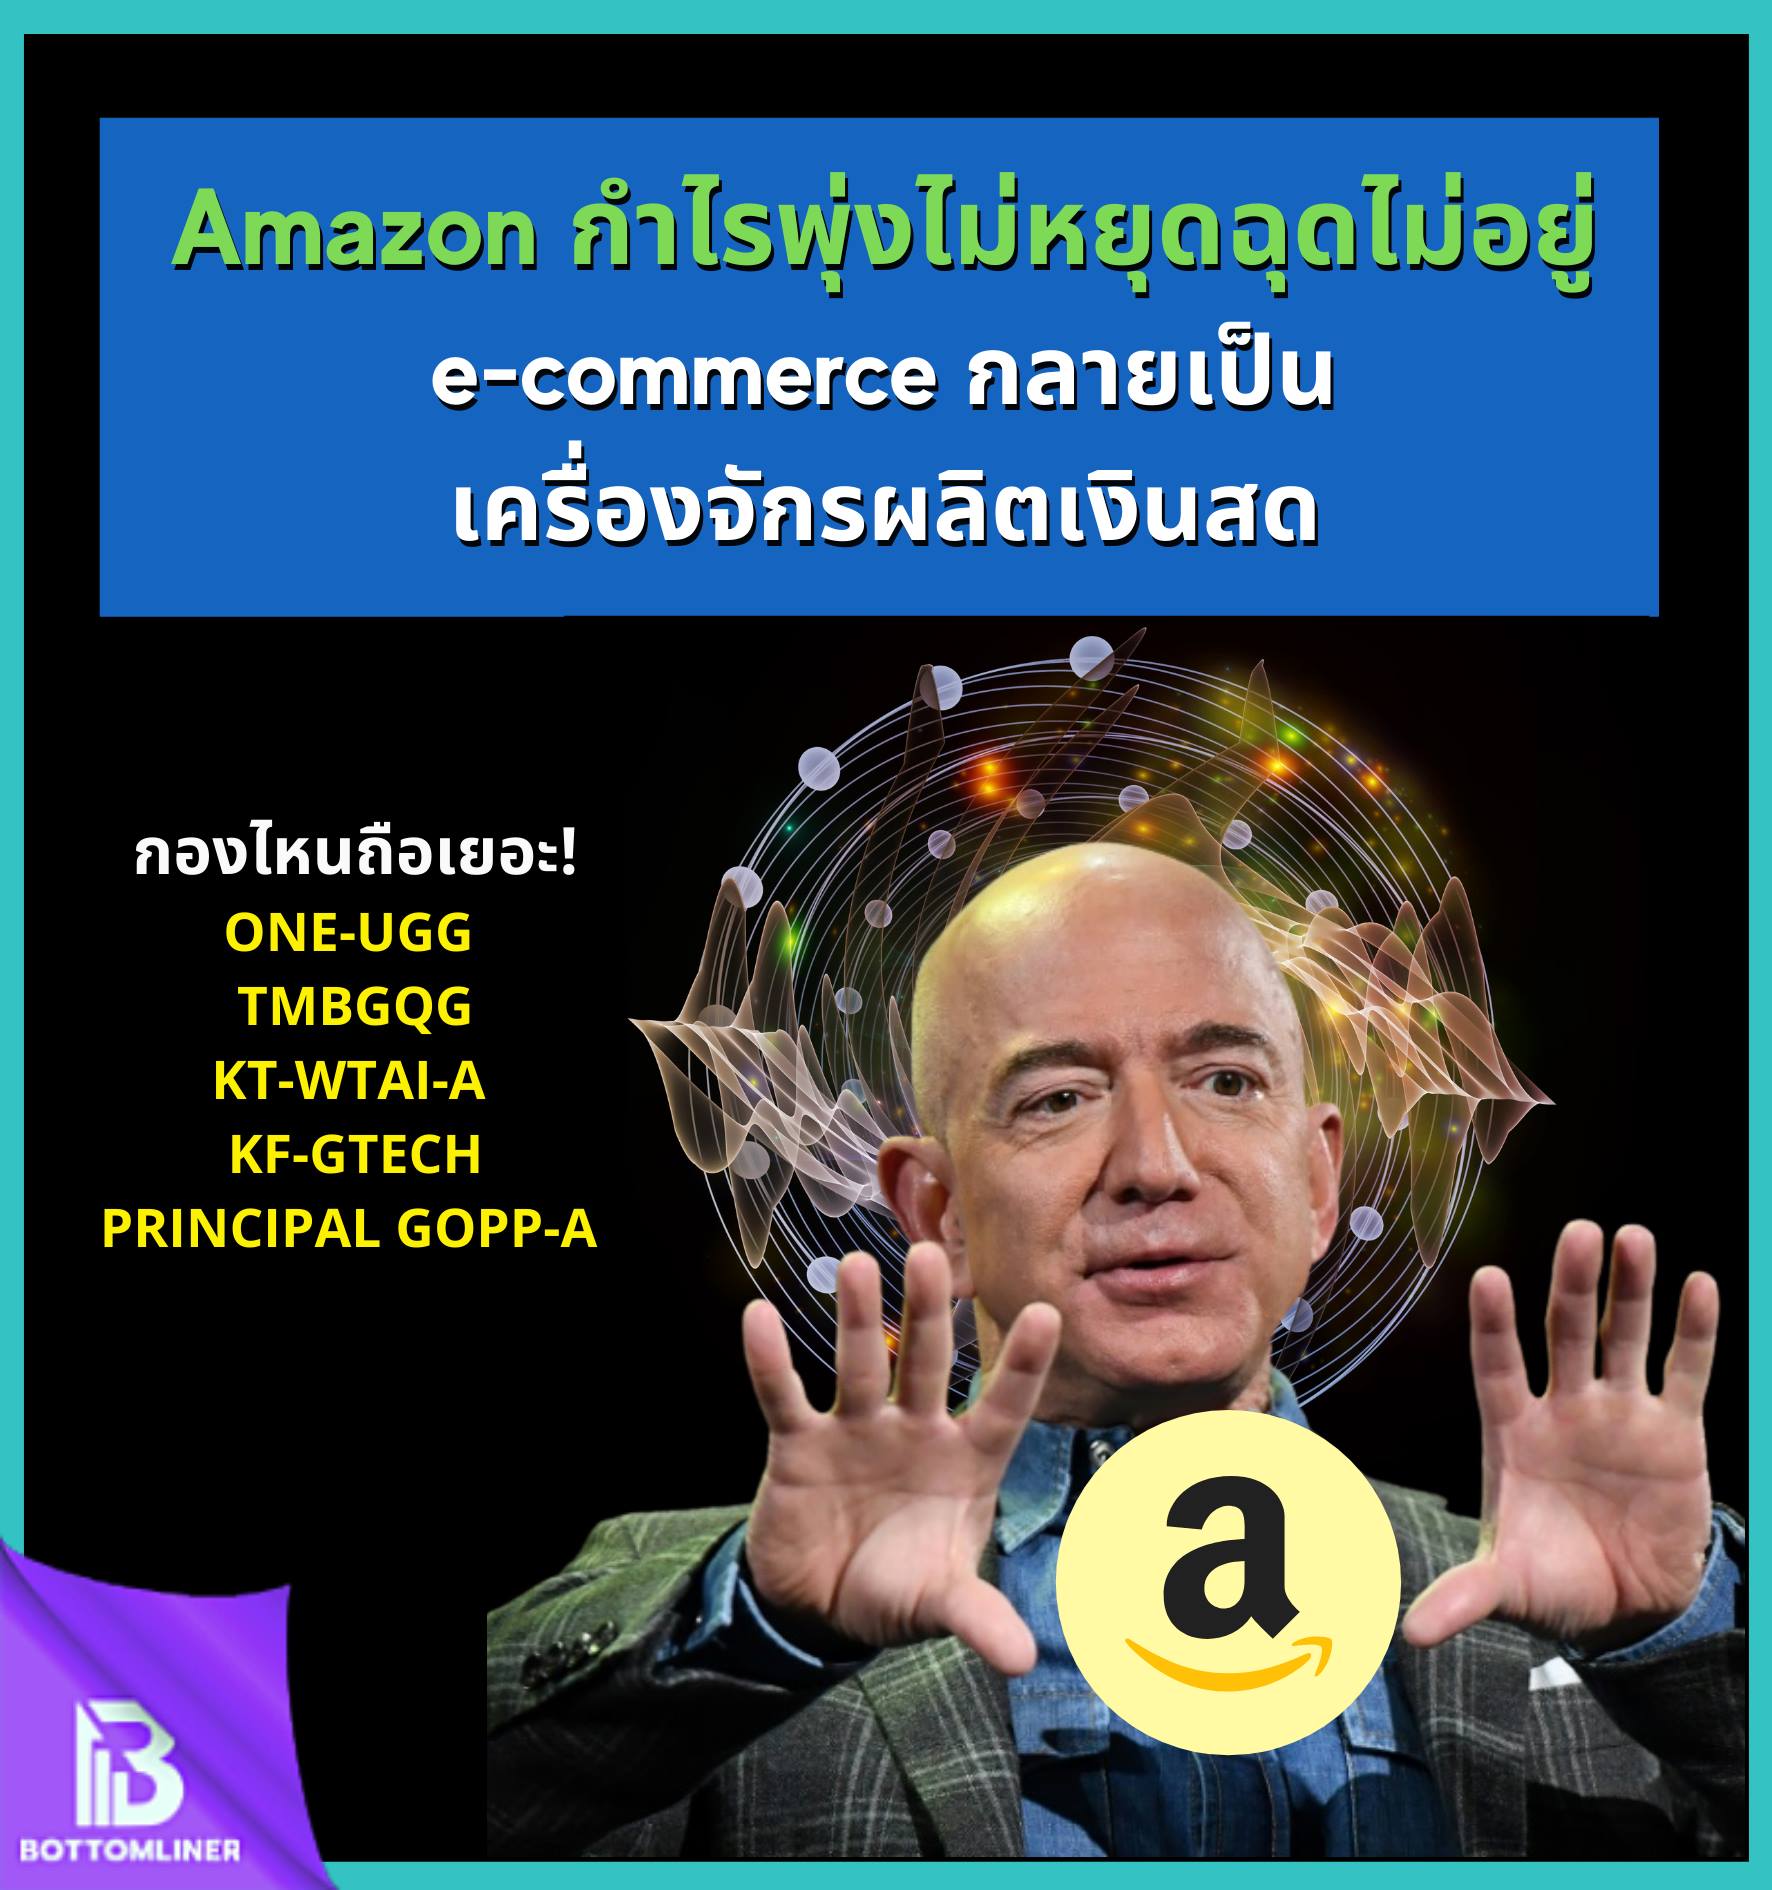 Amazon กำไรพุ่งไม่หยุดฉุดไม่อยู่ ธุรกิจ e-commerce กลายเป็นเครื่องจักรผลิตเงินสด